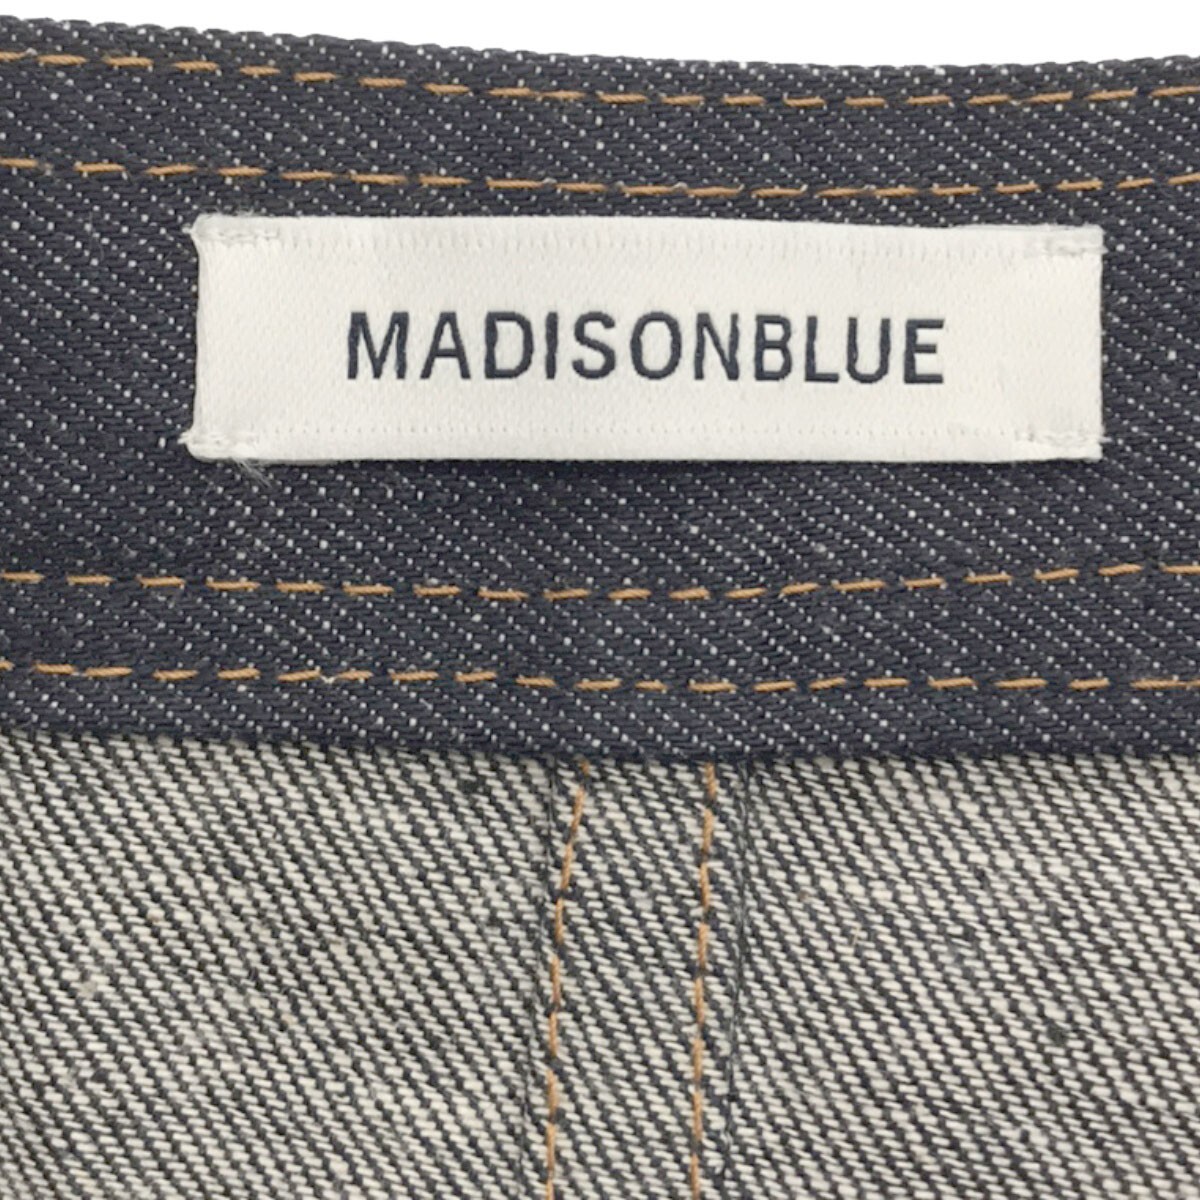 MADISON BLUE マディソンブルー 18SS デニムフレアスカート MB181-6014 インディゴ 00 IT1OE9YOIXBW_画像3